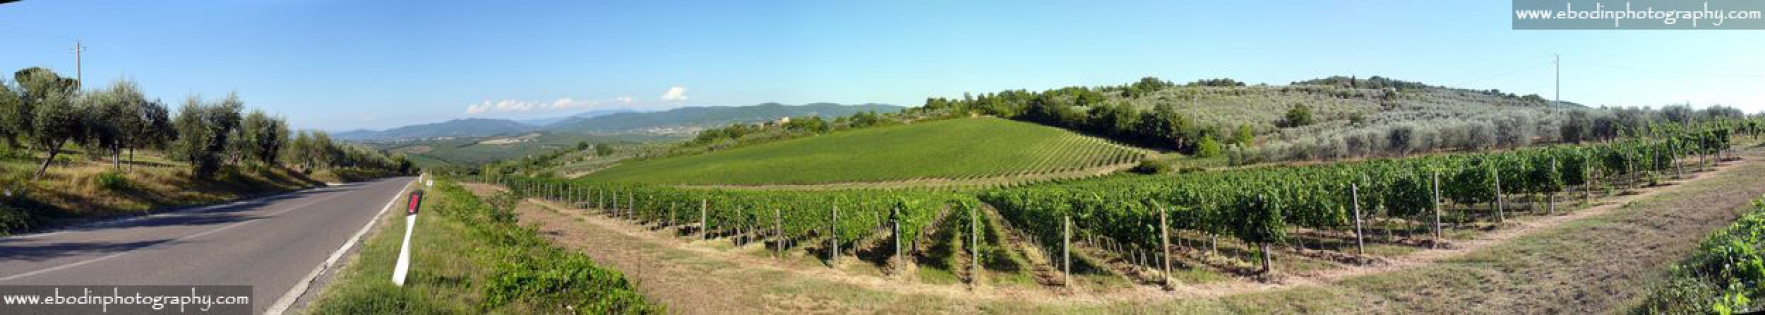 Chianti © 2013
Les vignobles du Chianti en Toscane (Italie)